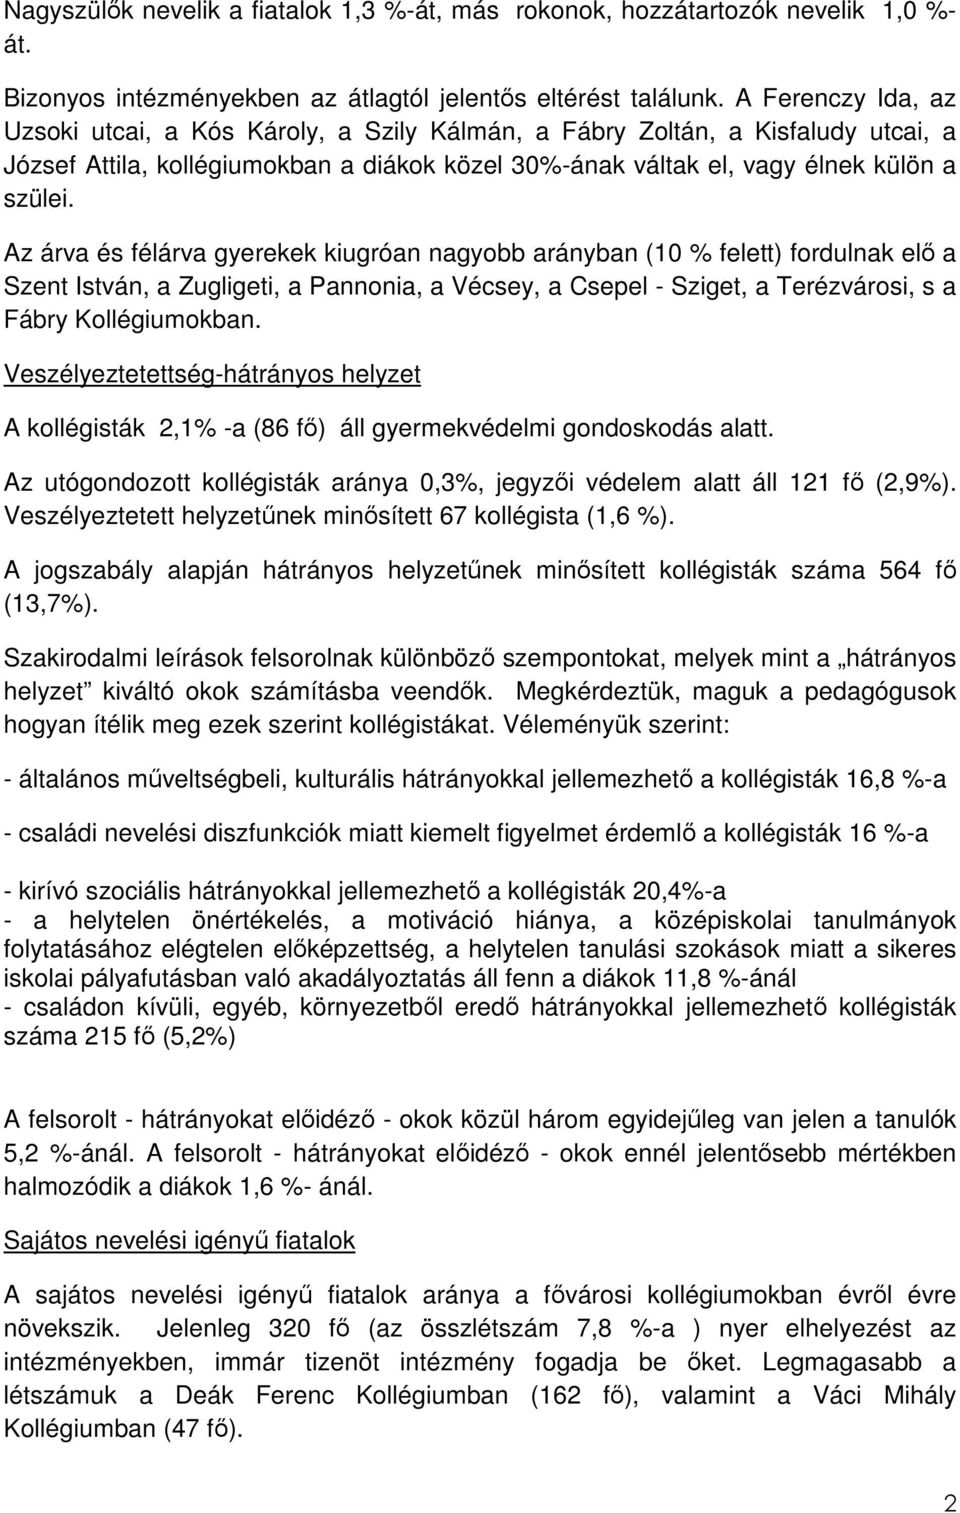 Az árva és félárva gyerekek kiugróan nagyobb arányban (10 % felett) fordulnak elı a Szent István, a Zugligeti, a Pannonia, a Vécsey, a Csepel - Sziget, a Terézvárosi, s a Fábry Kollégiumokban.